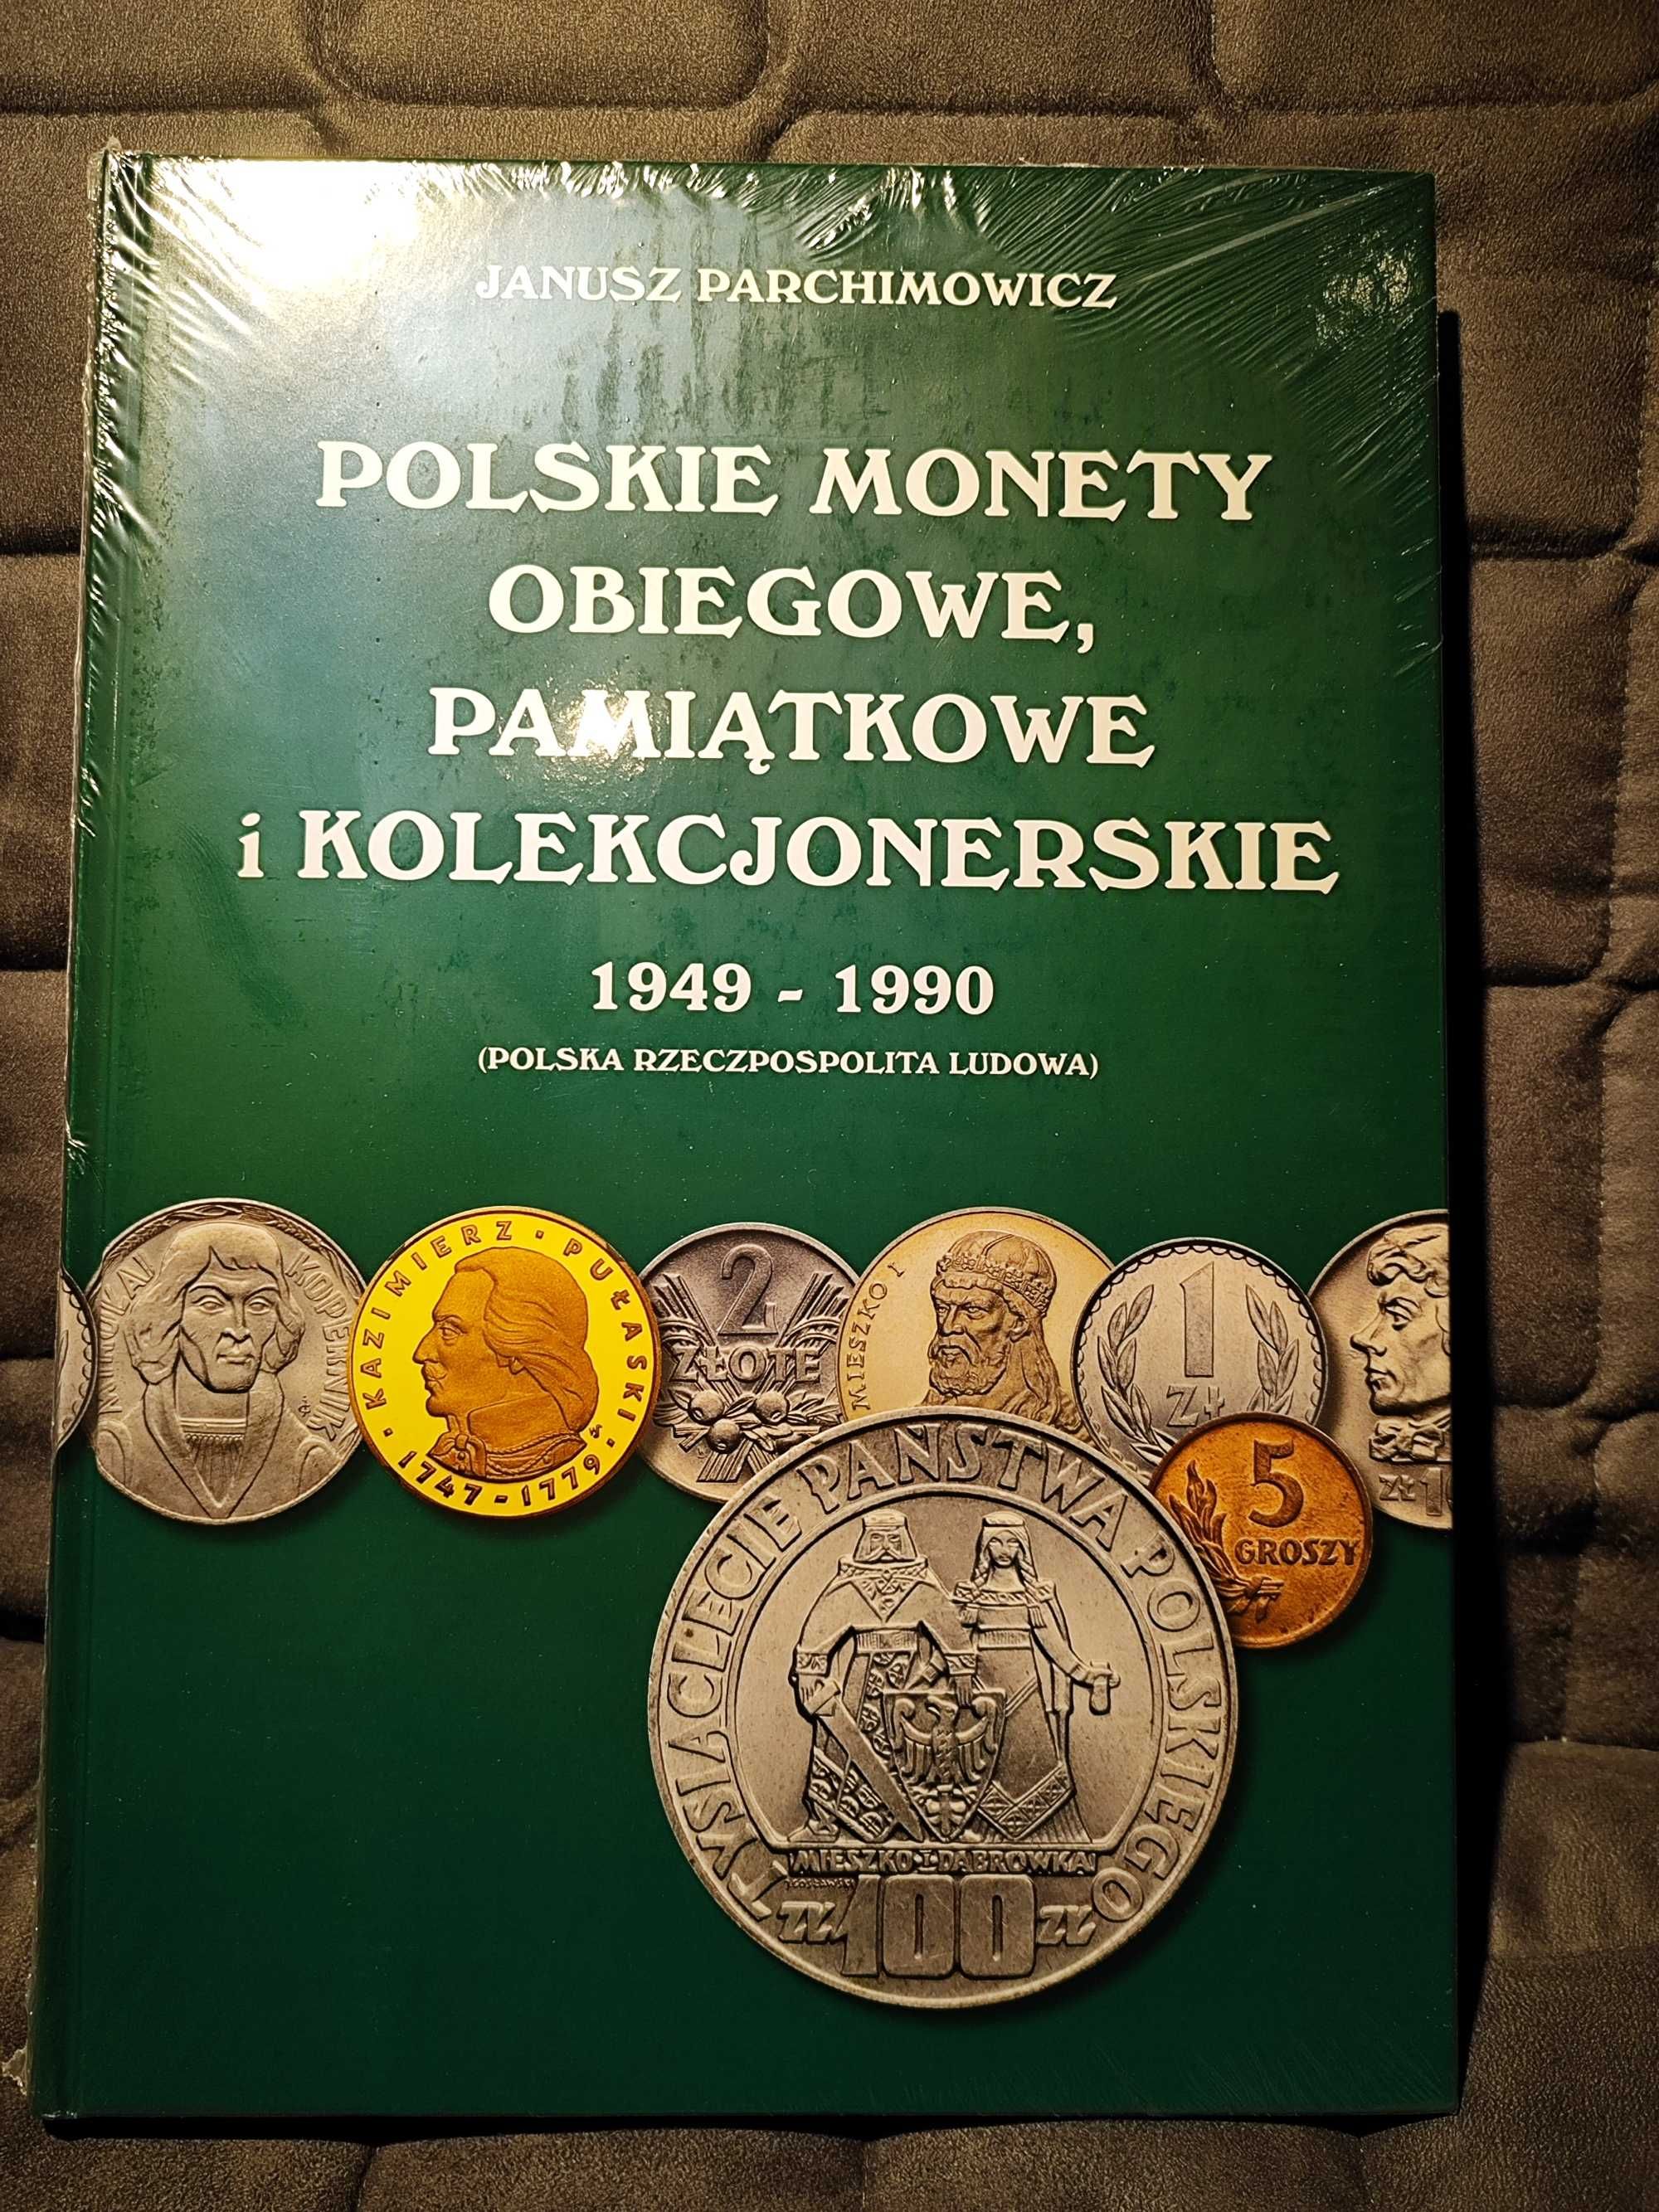 Katalog Polskie monety obiegowe PRL, Wydanie II, najnowsze.